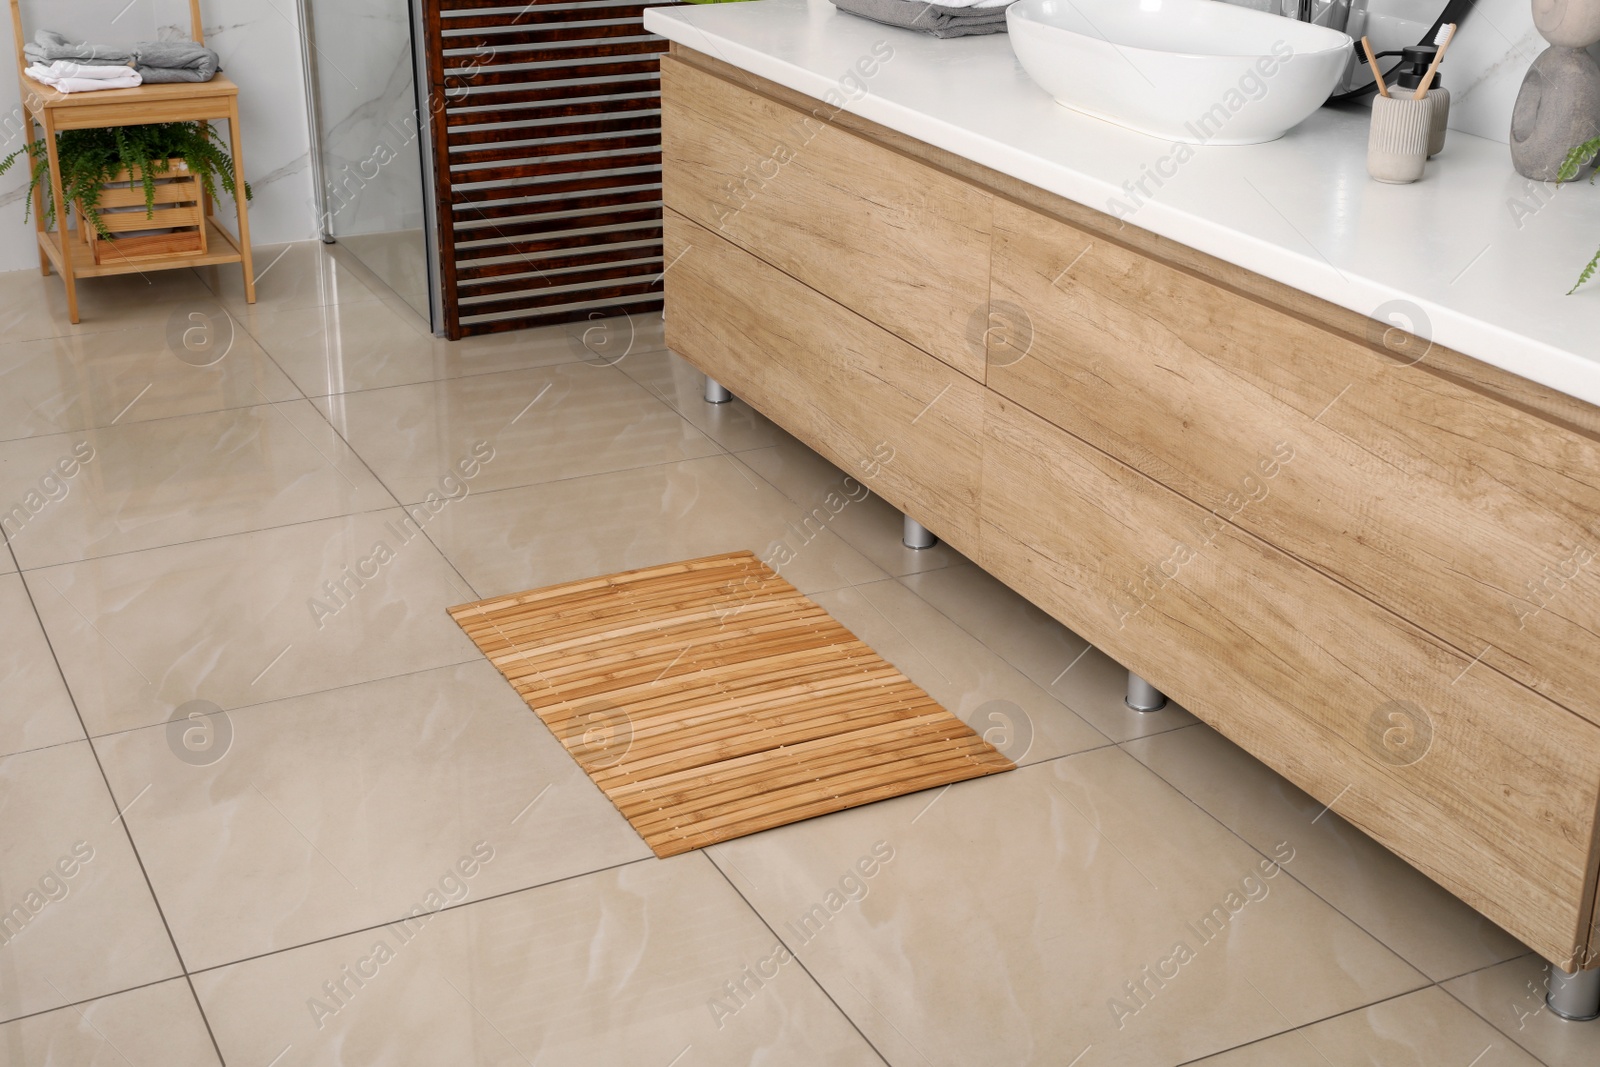 Photo of Wooden mat on floor in bathroom. Interior design